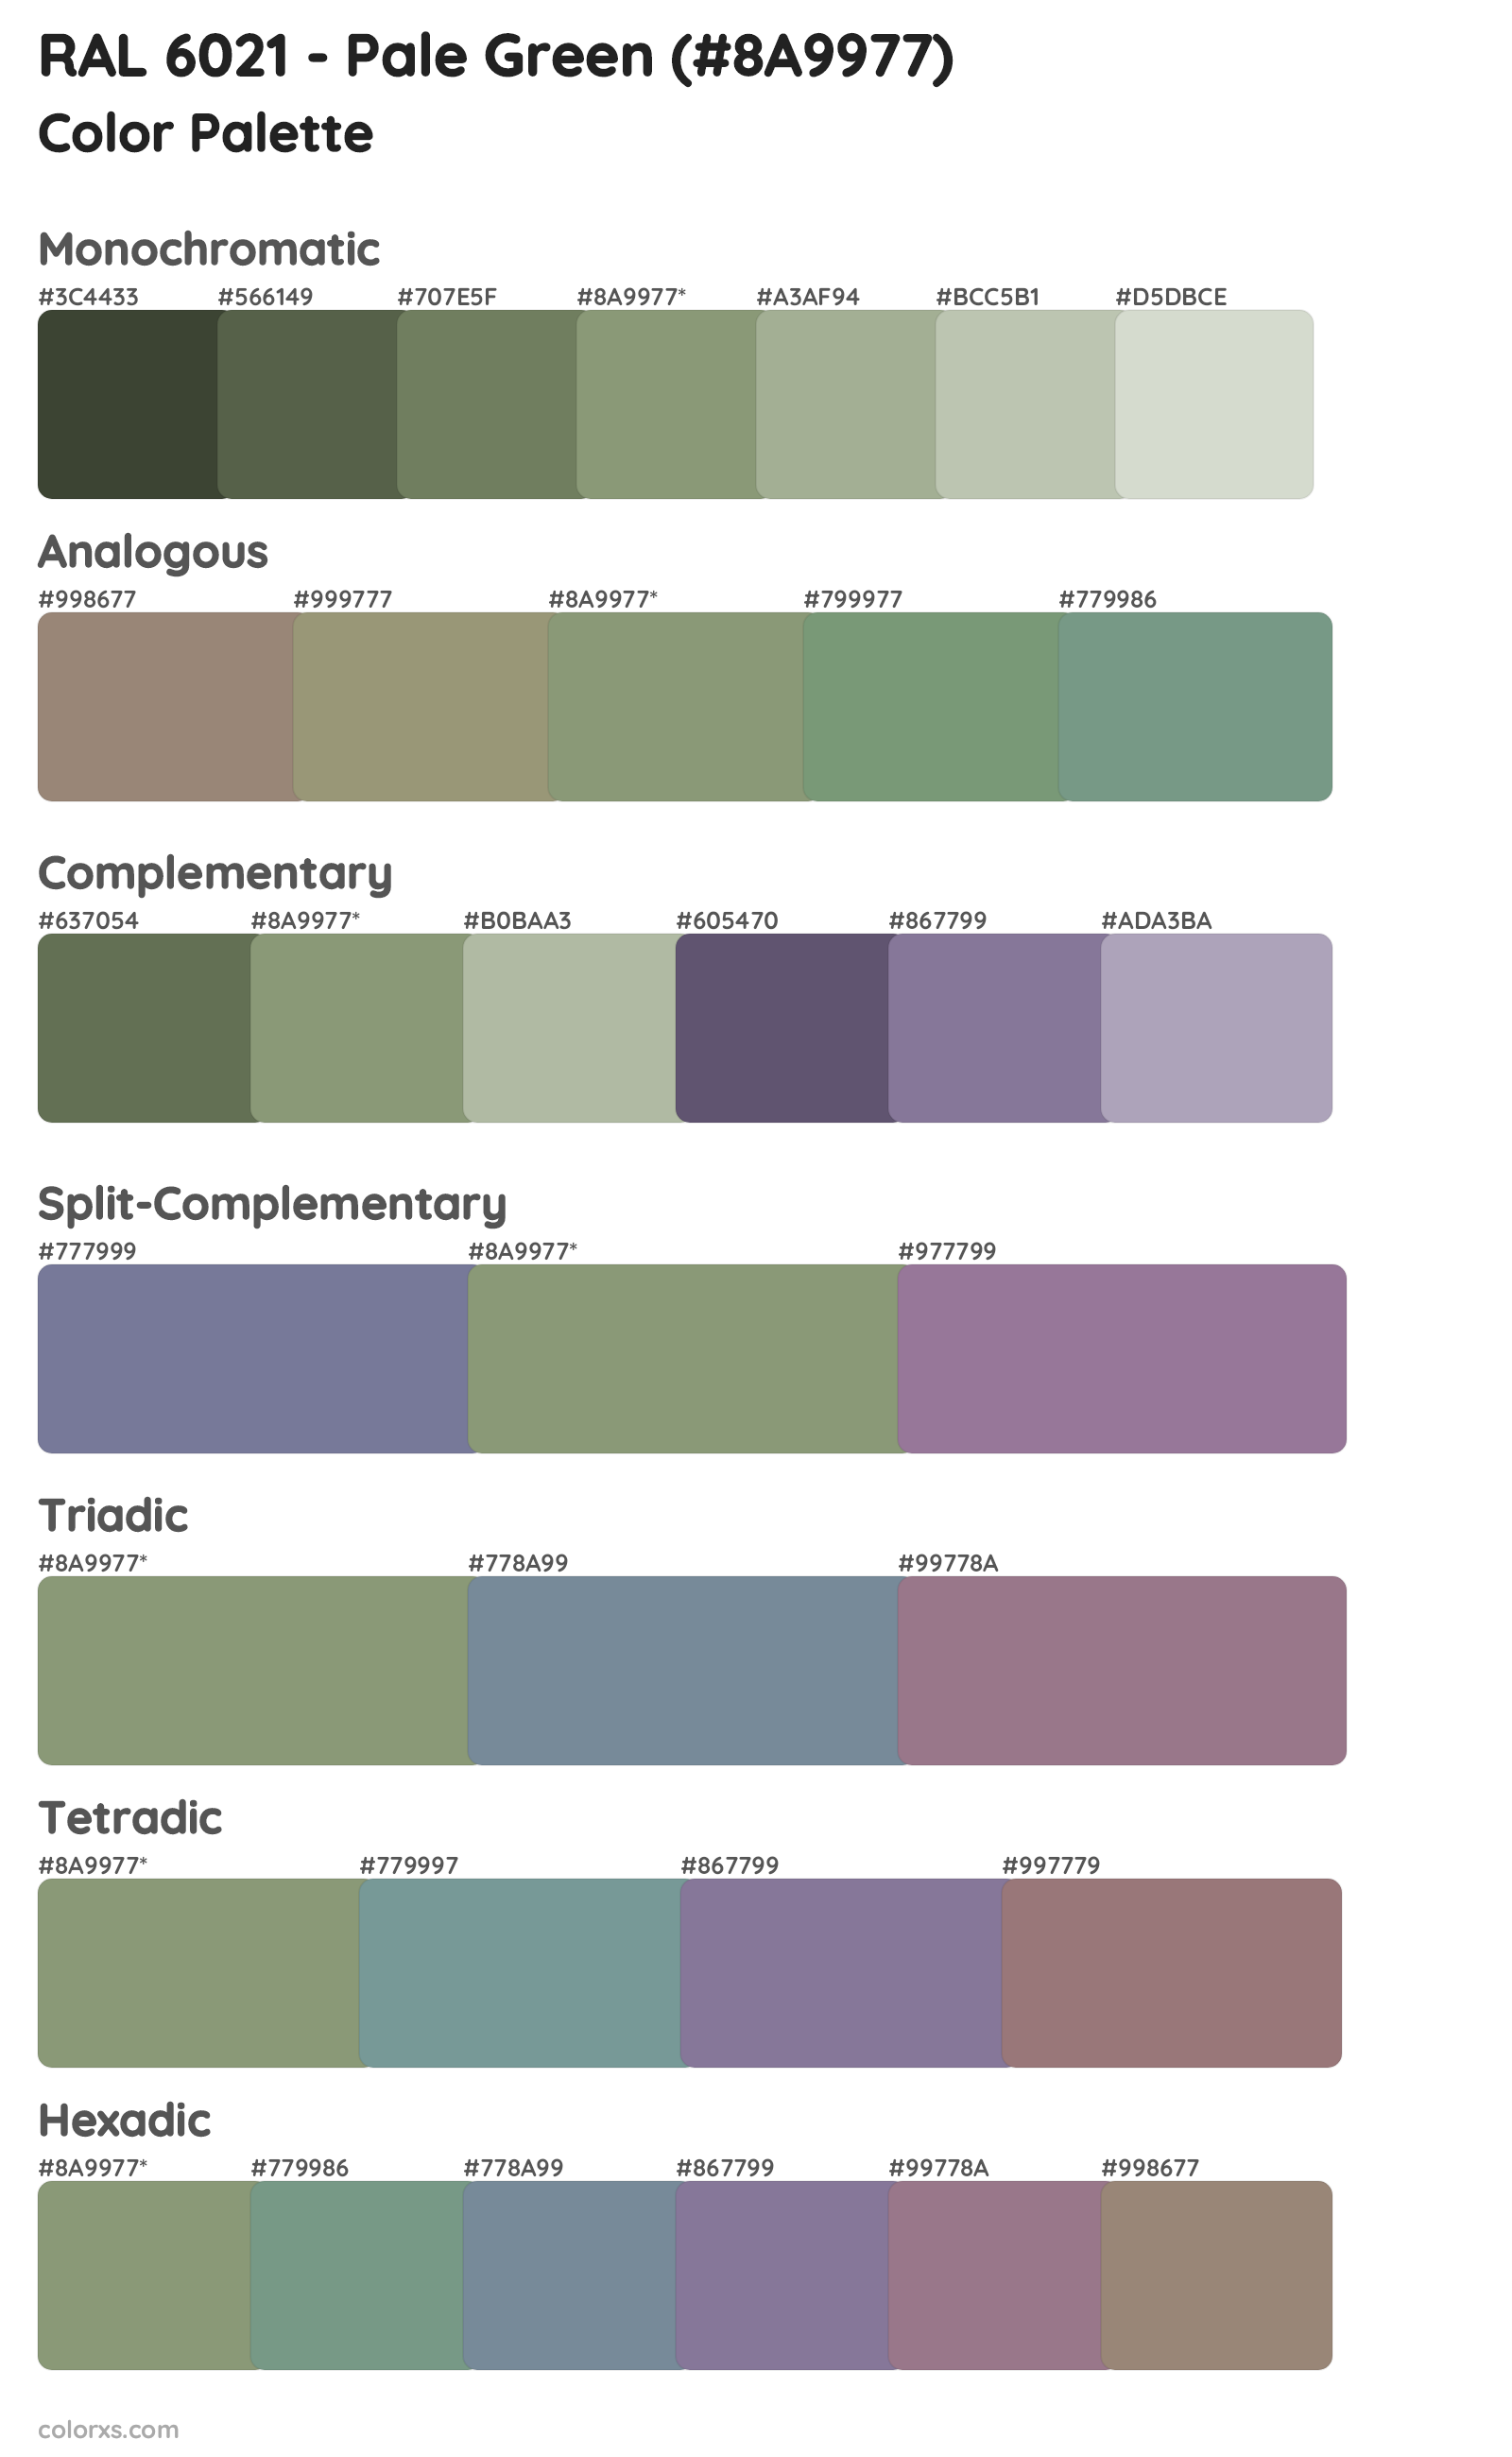 RAL 6021 - Pale Green Color Scheme Palettes